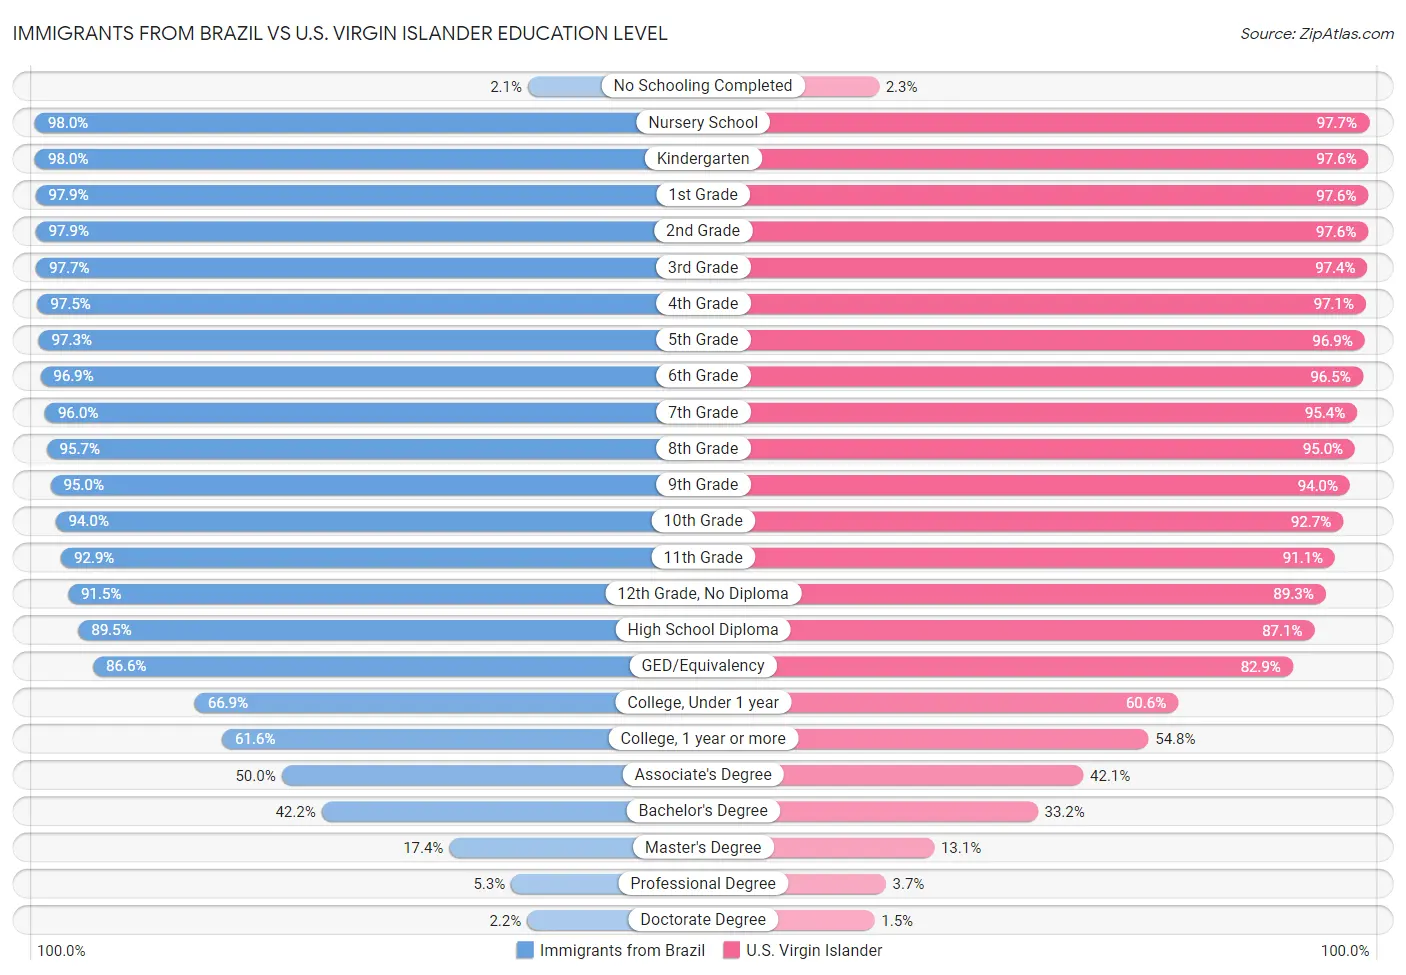 Immigrants from Brazil vs U.S. Virgin Islander Education Level